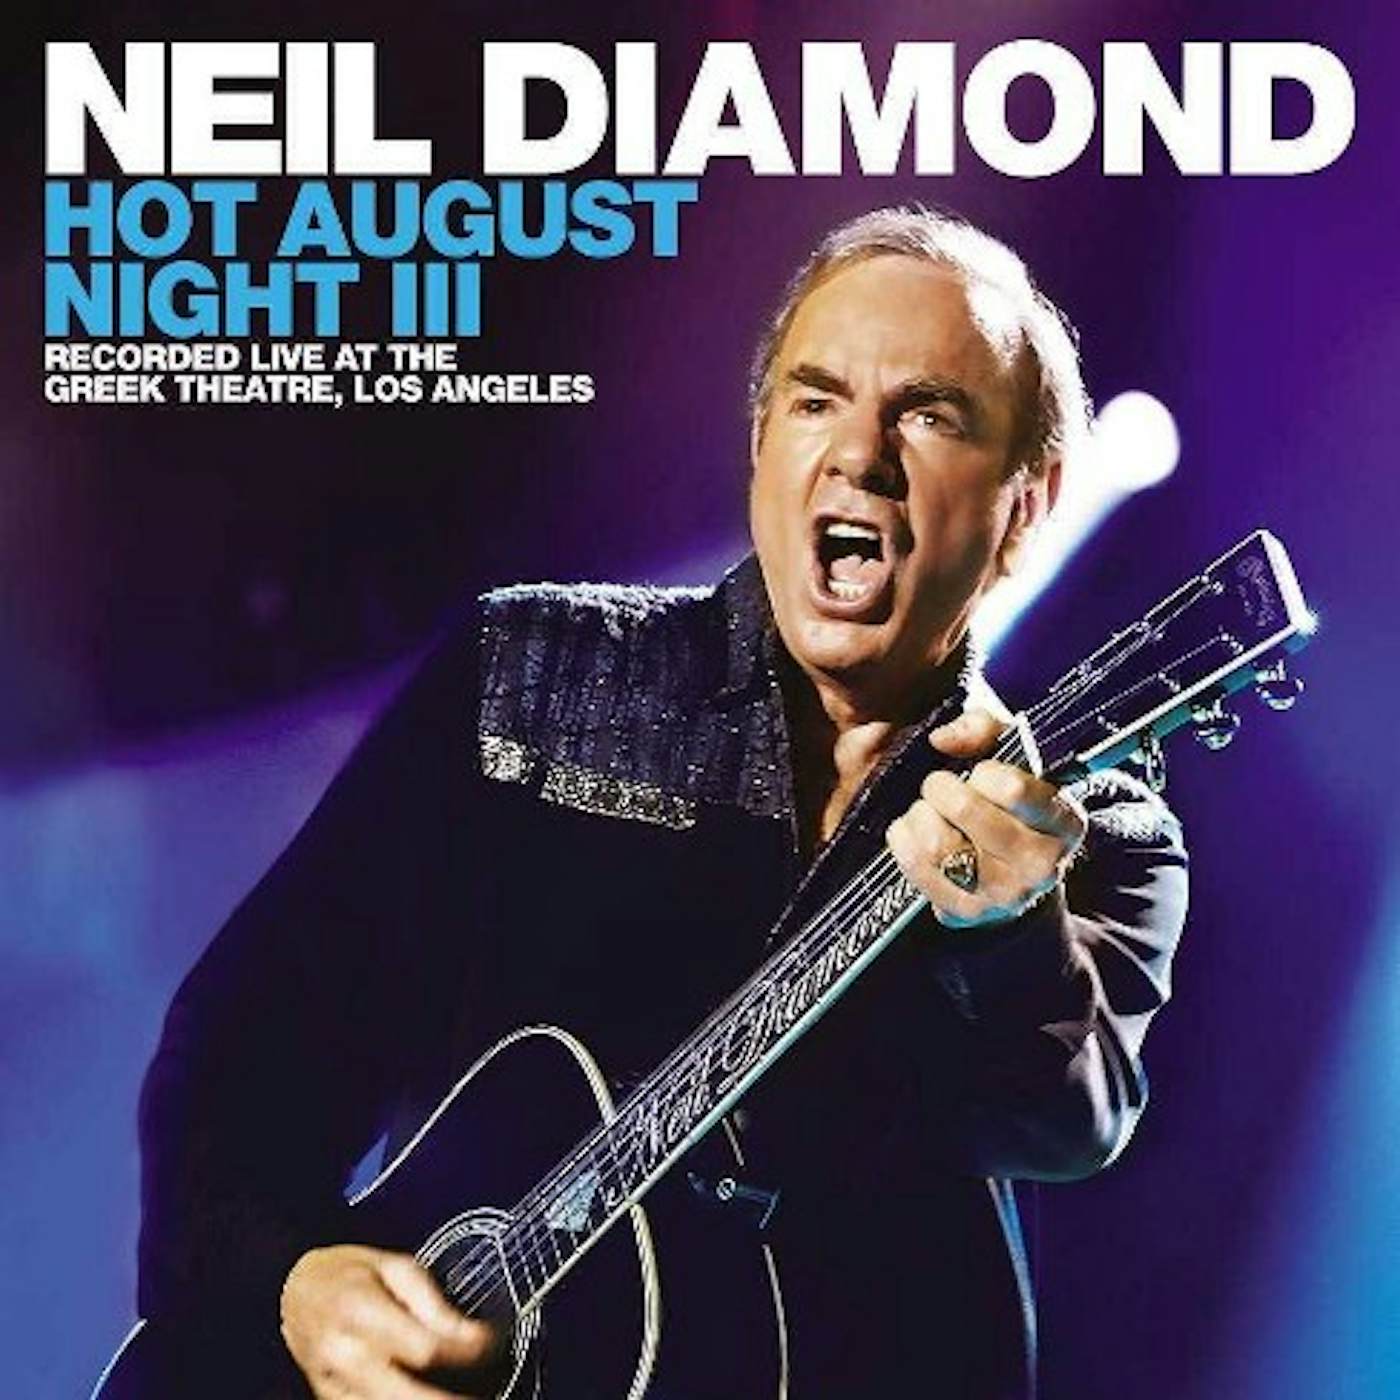 Neil Diamond Hot August Night III Vinyl Record